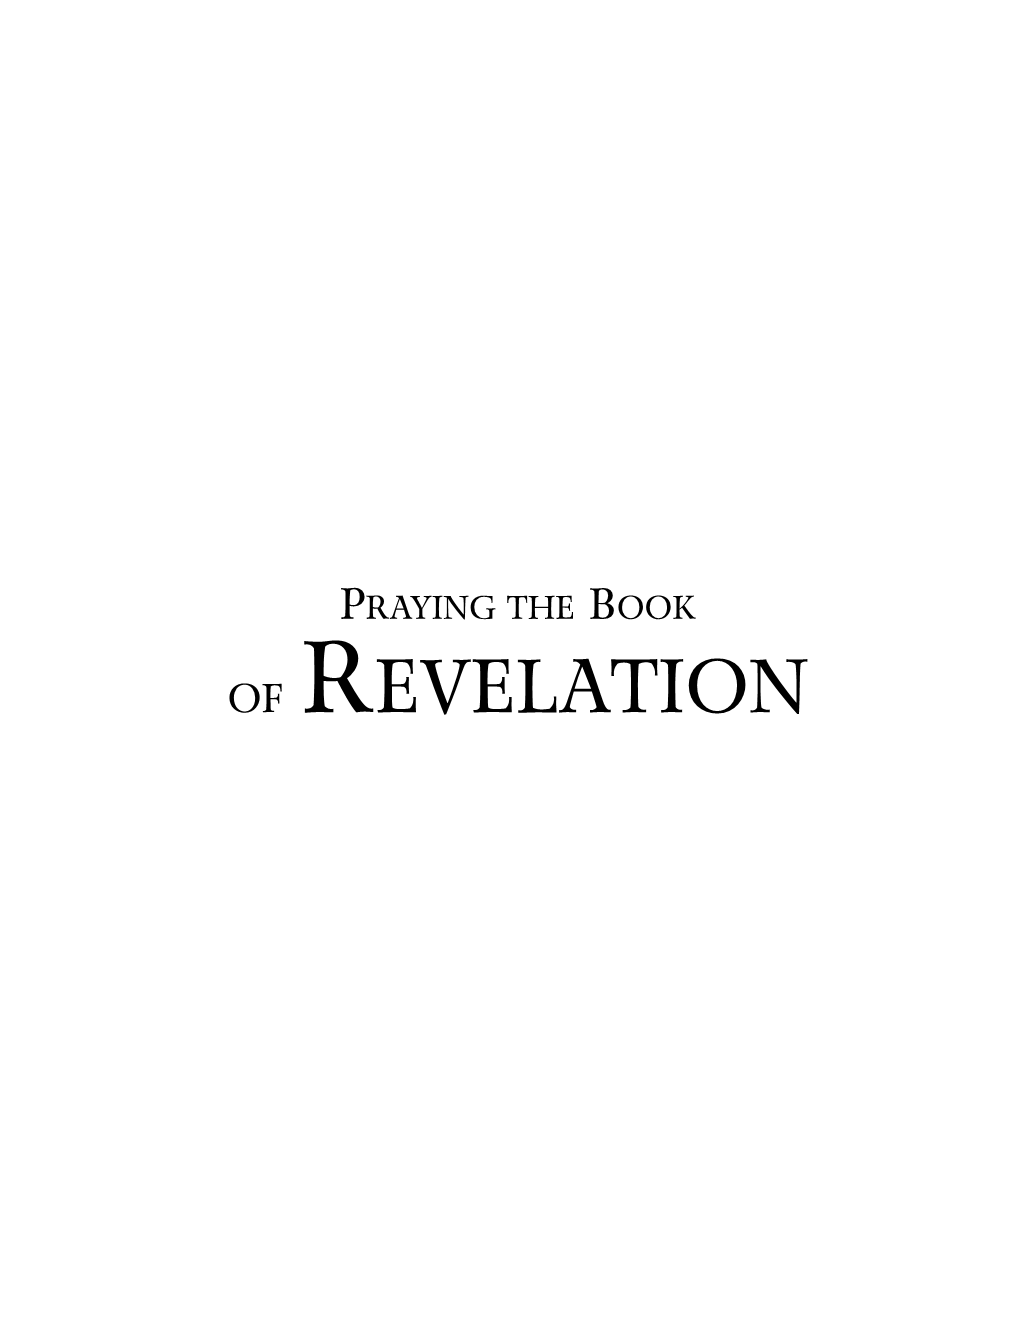 Of Revelation